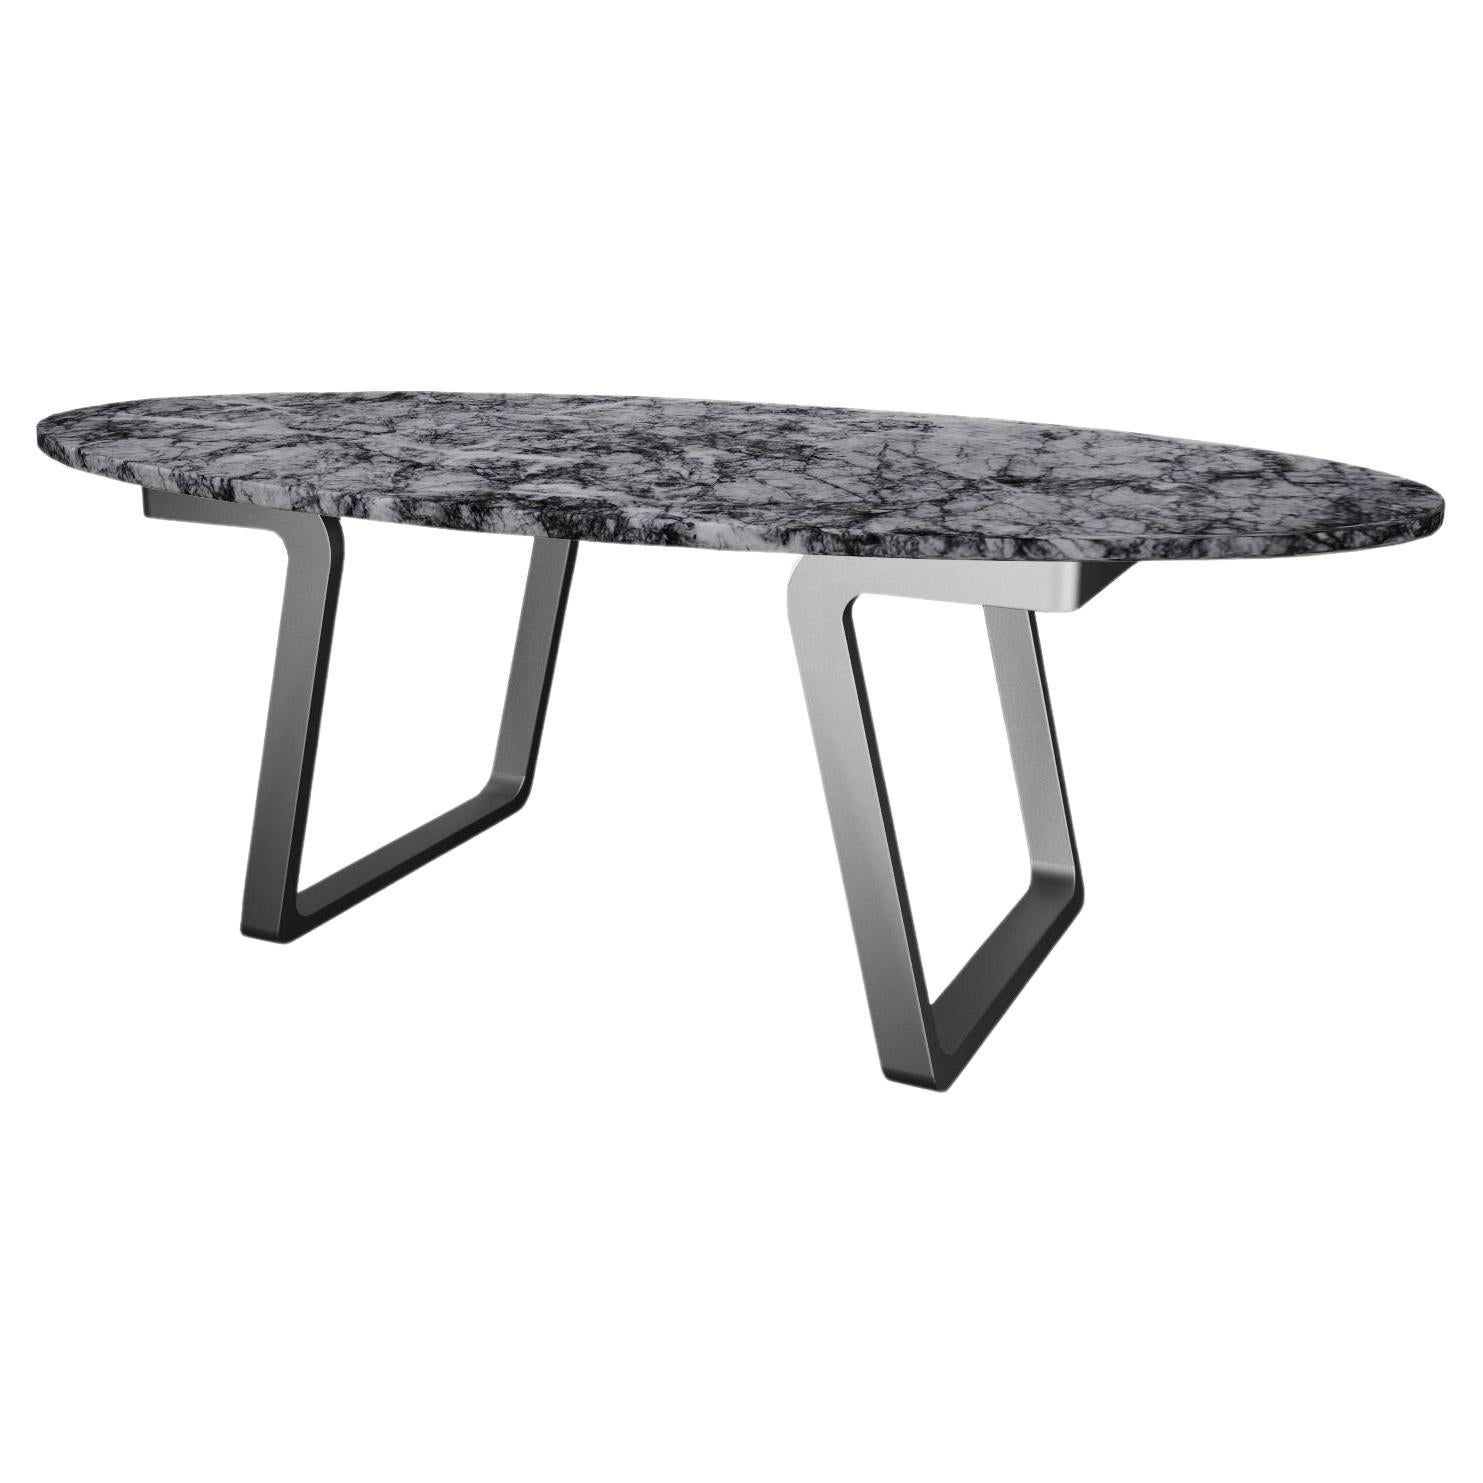 Table basse NORDST JERRY, marbre gris Rain italien, design moderne danois, nouveau en vente